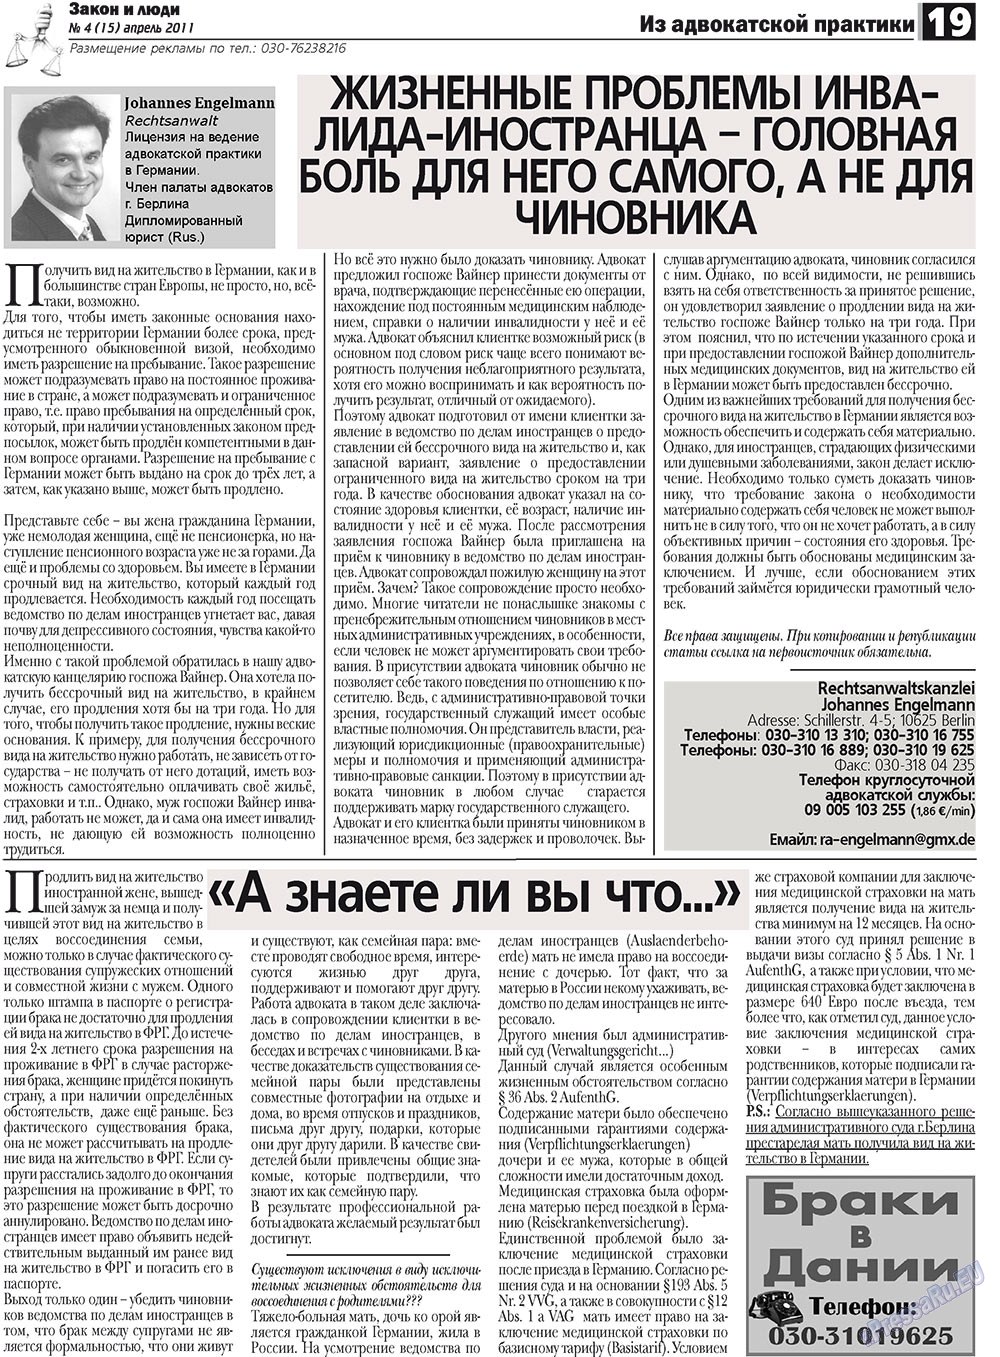 Закон и люди, газета. 2011 №4 стр.19